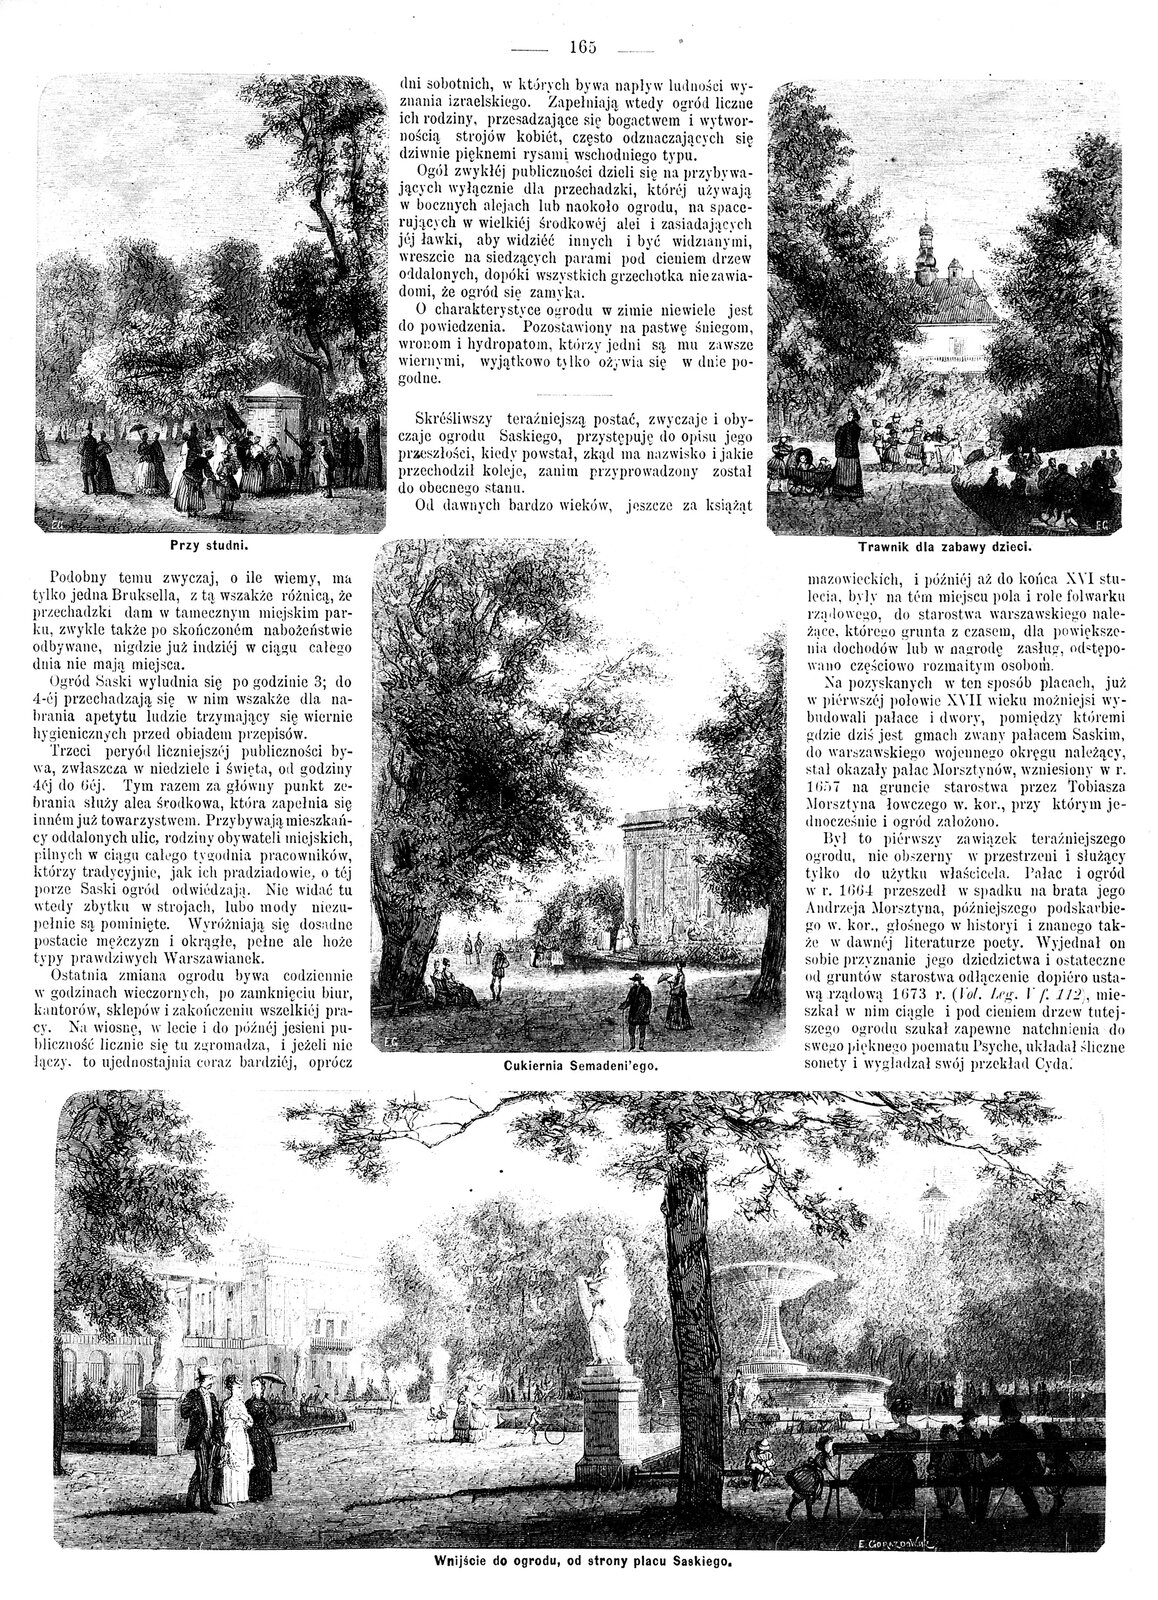 Ogród Saski w Warszawie Źródło: Edward Gorazdowski, Ogród Saski w Warszawie, „Tygodnik Ilustrowany” 1869 (z dn. 2.10), rycina, domena publiczna.